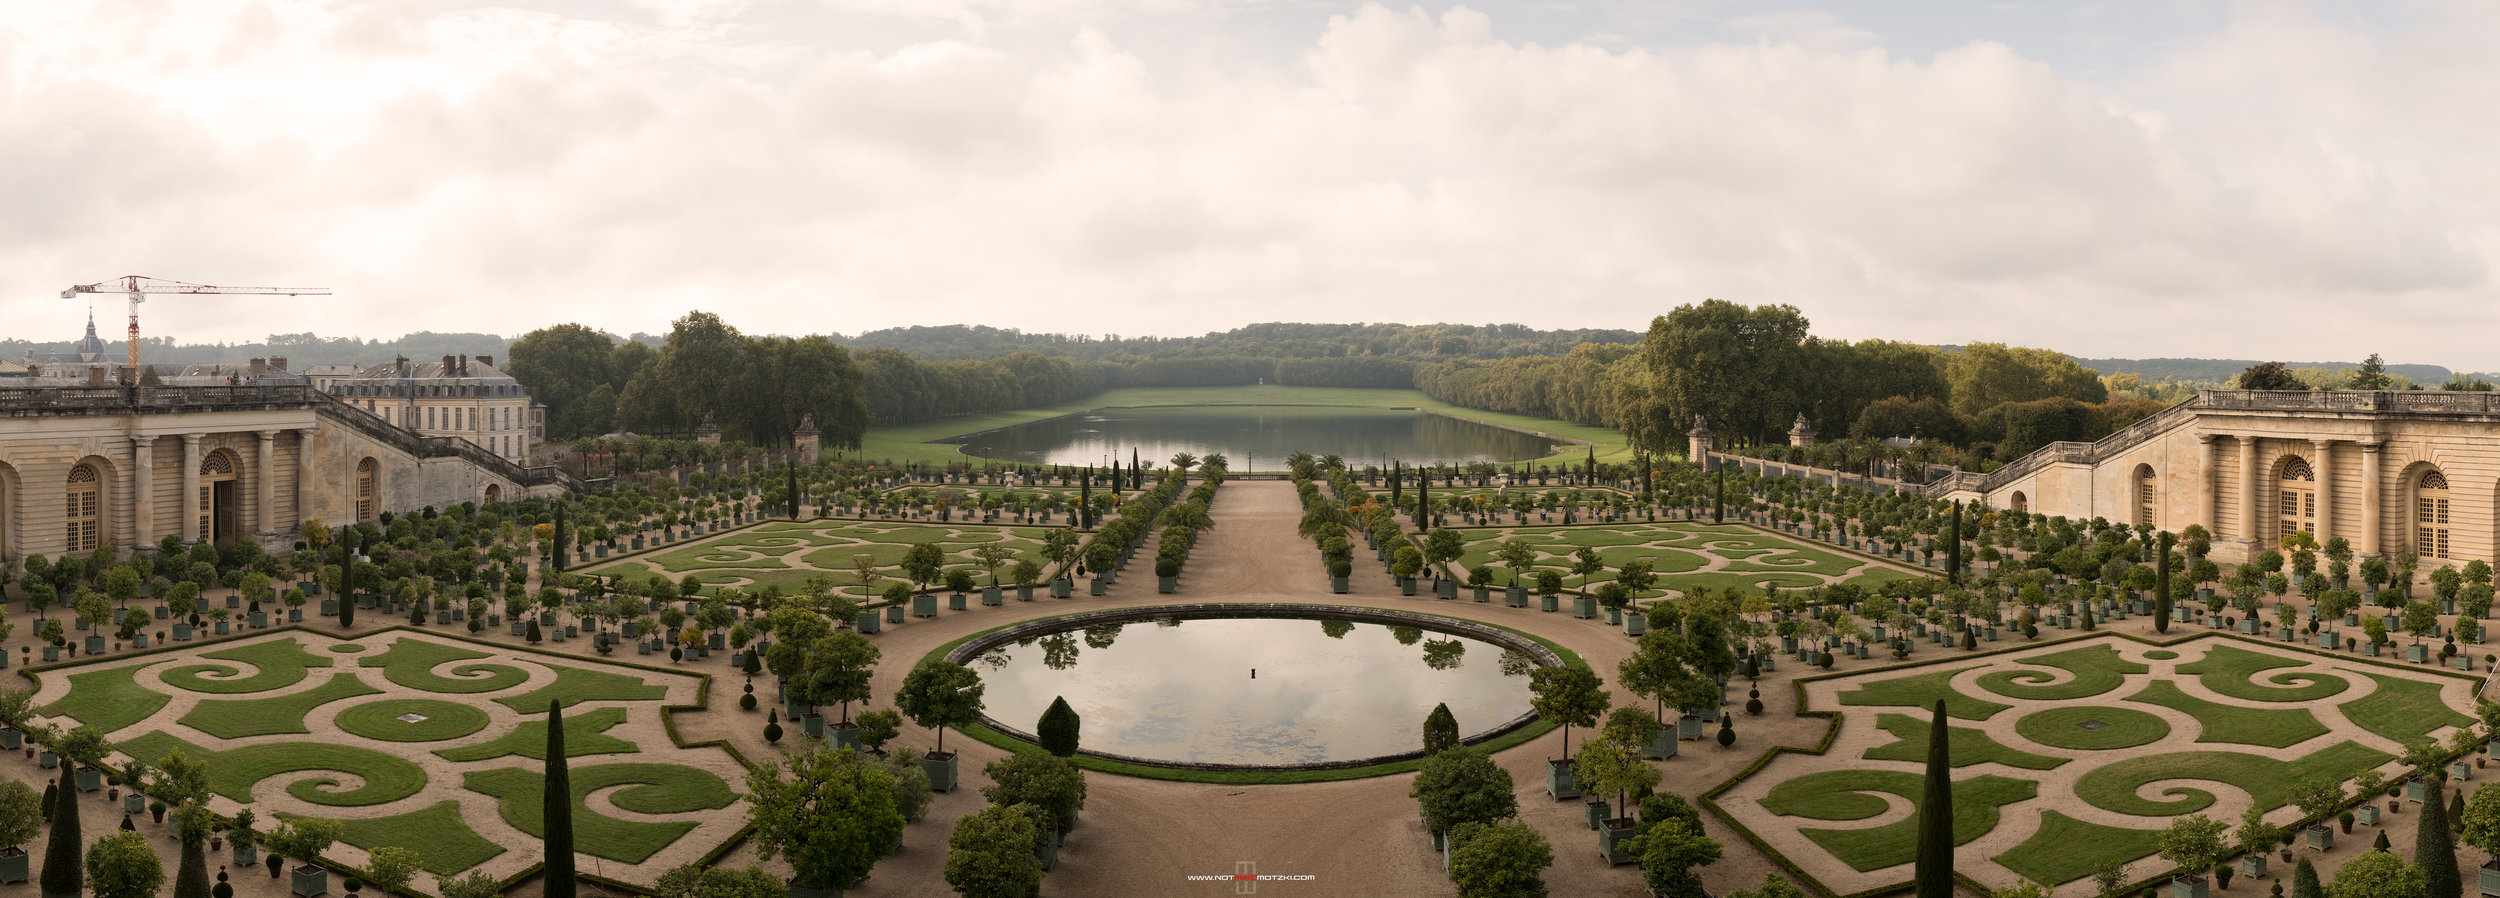 Versailles-Garden.jpg